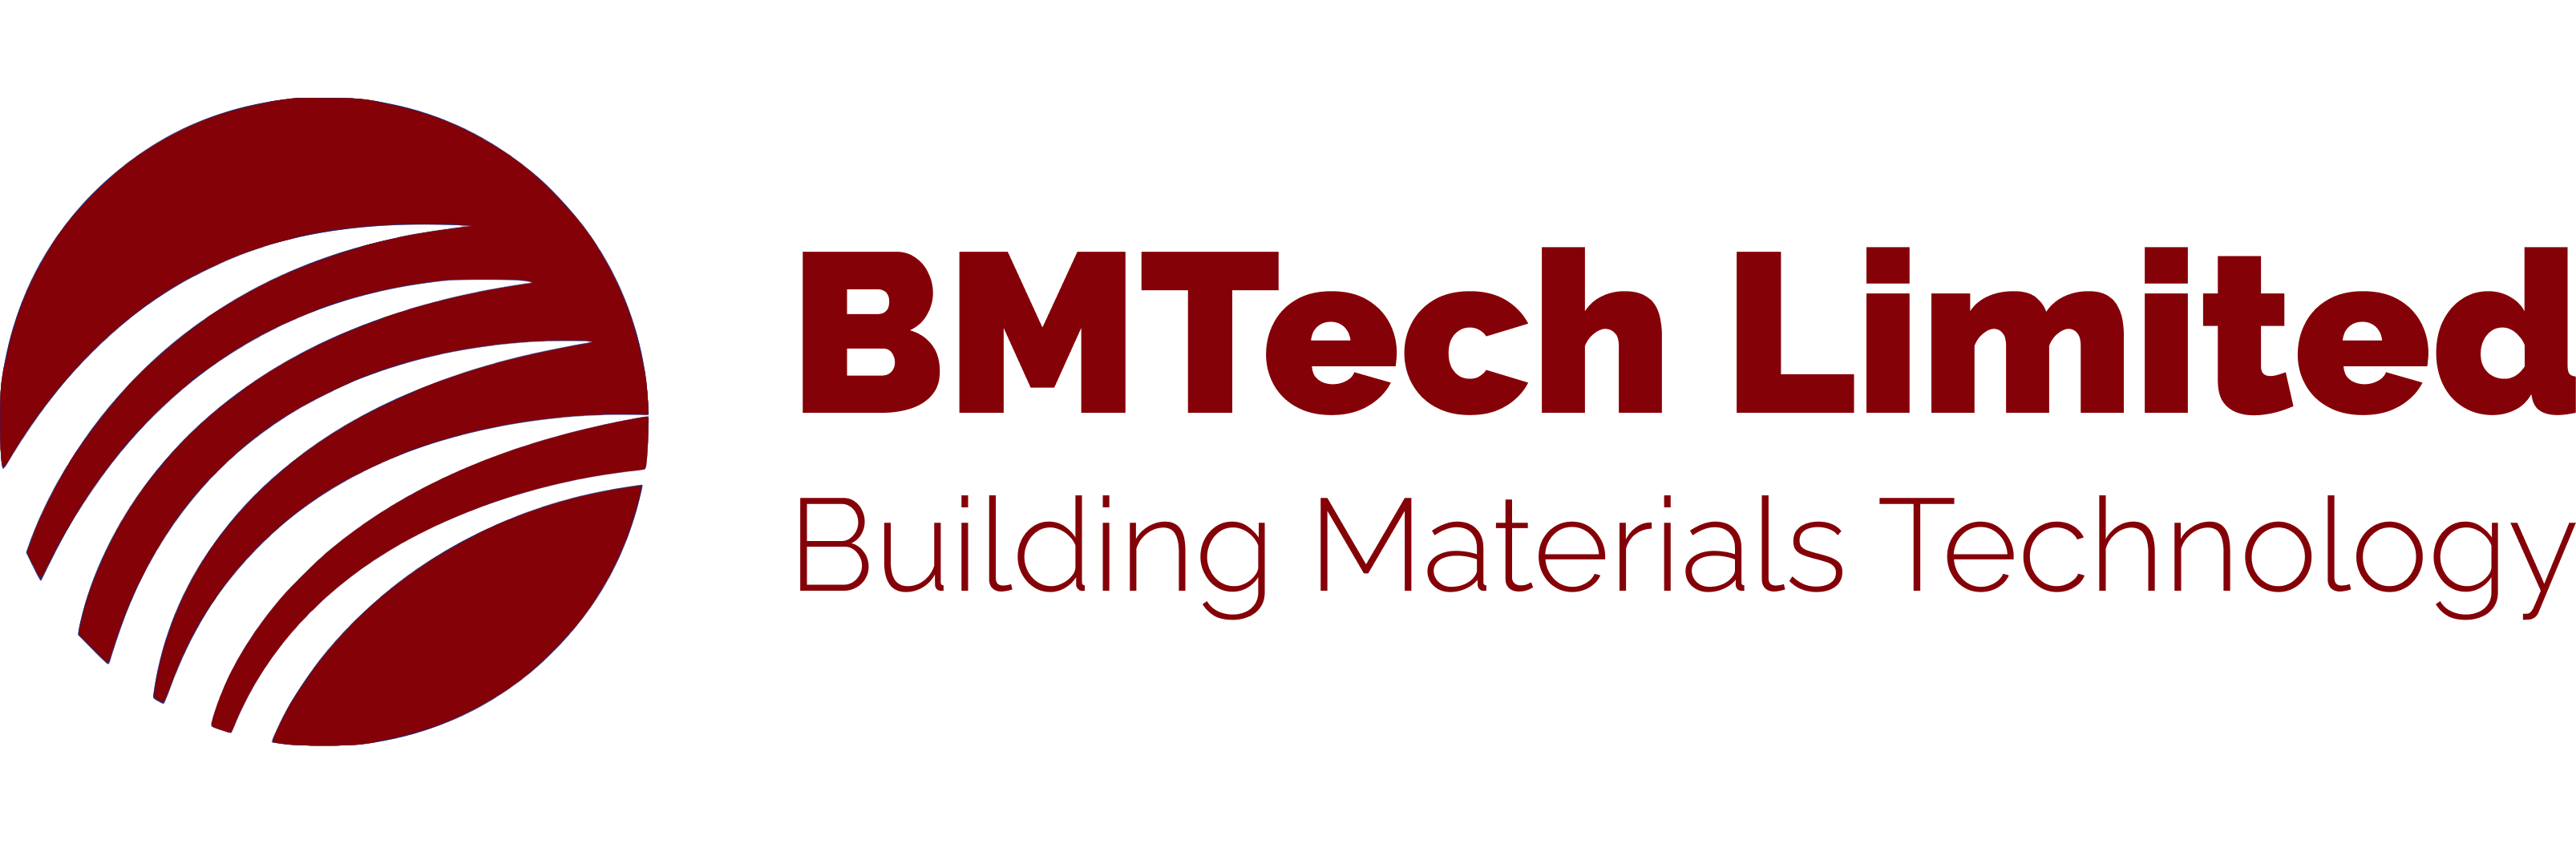 bmtech-logo-red